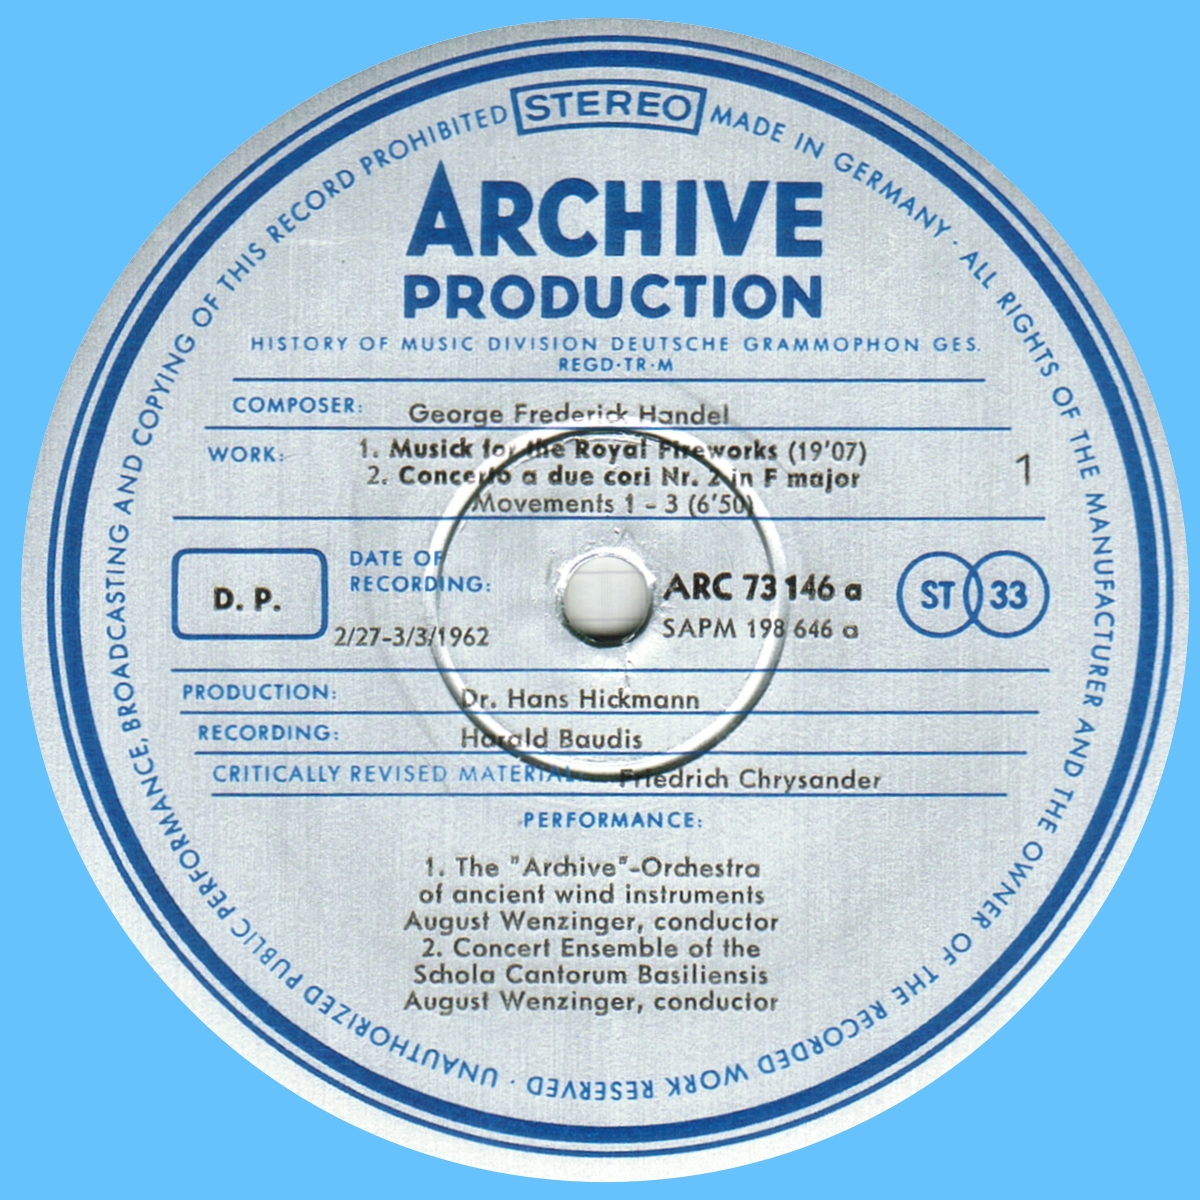 Étiquette recto disque Deutsche Grammophon Archive Production ARC 73146 198646 SAPM